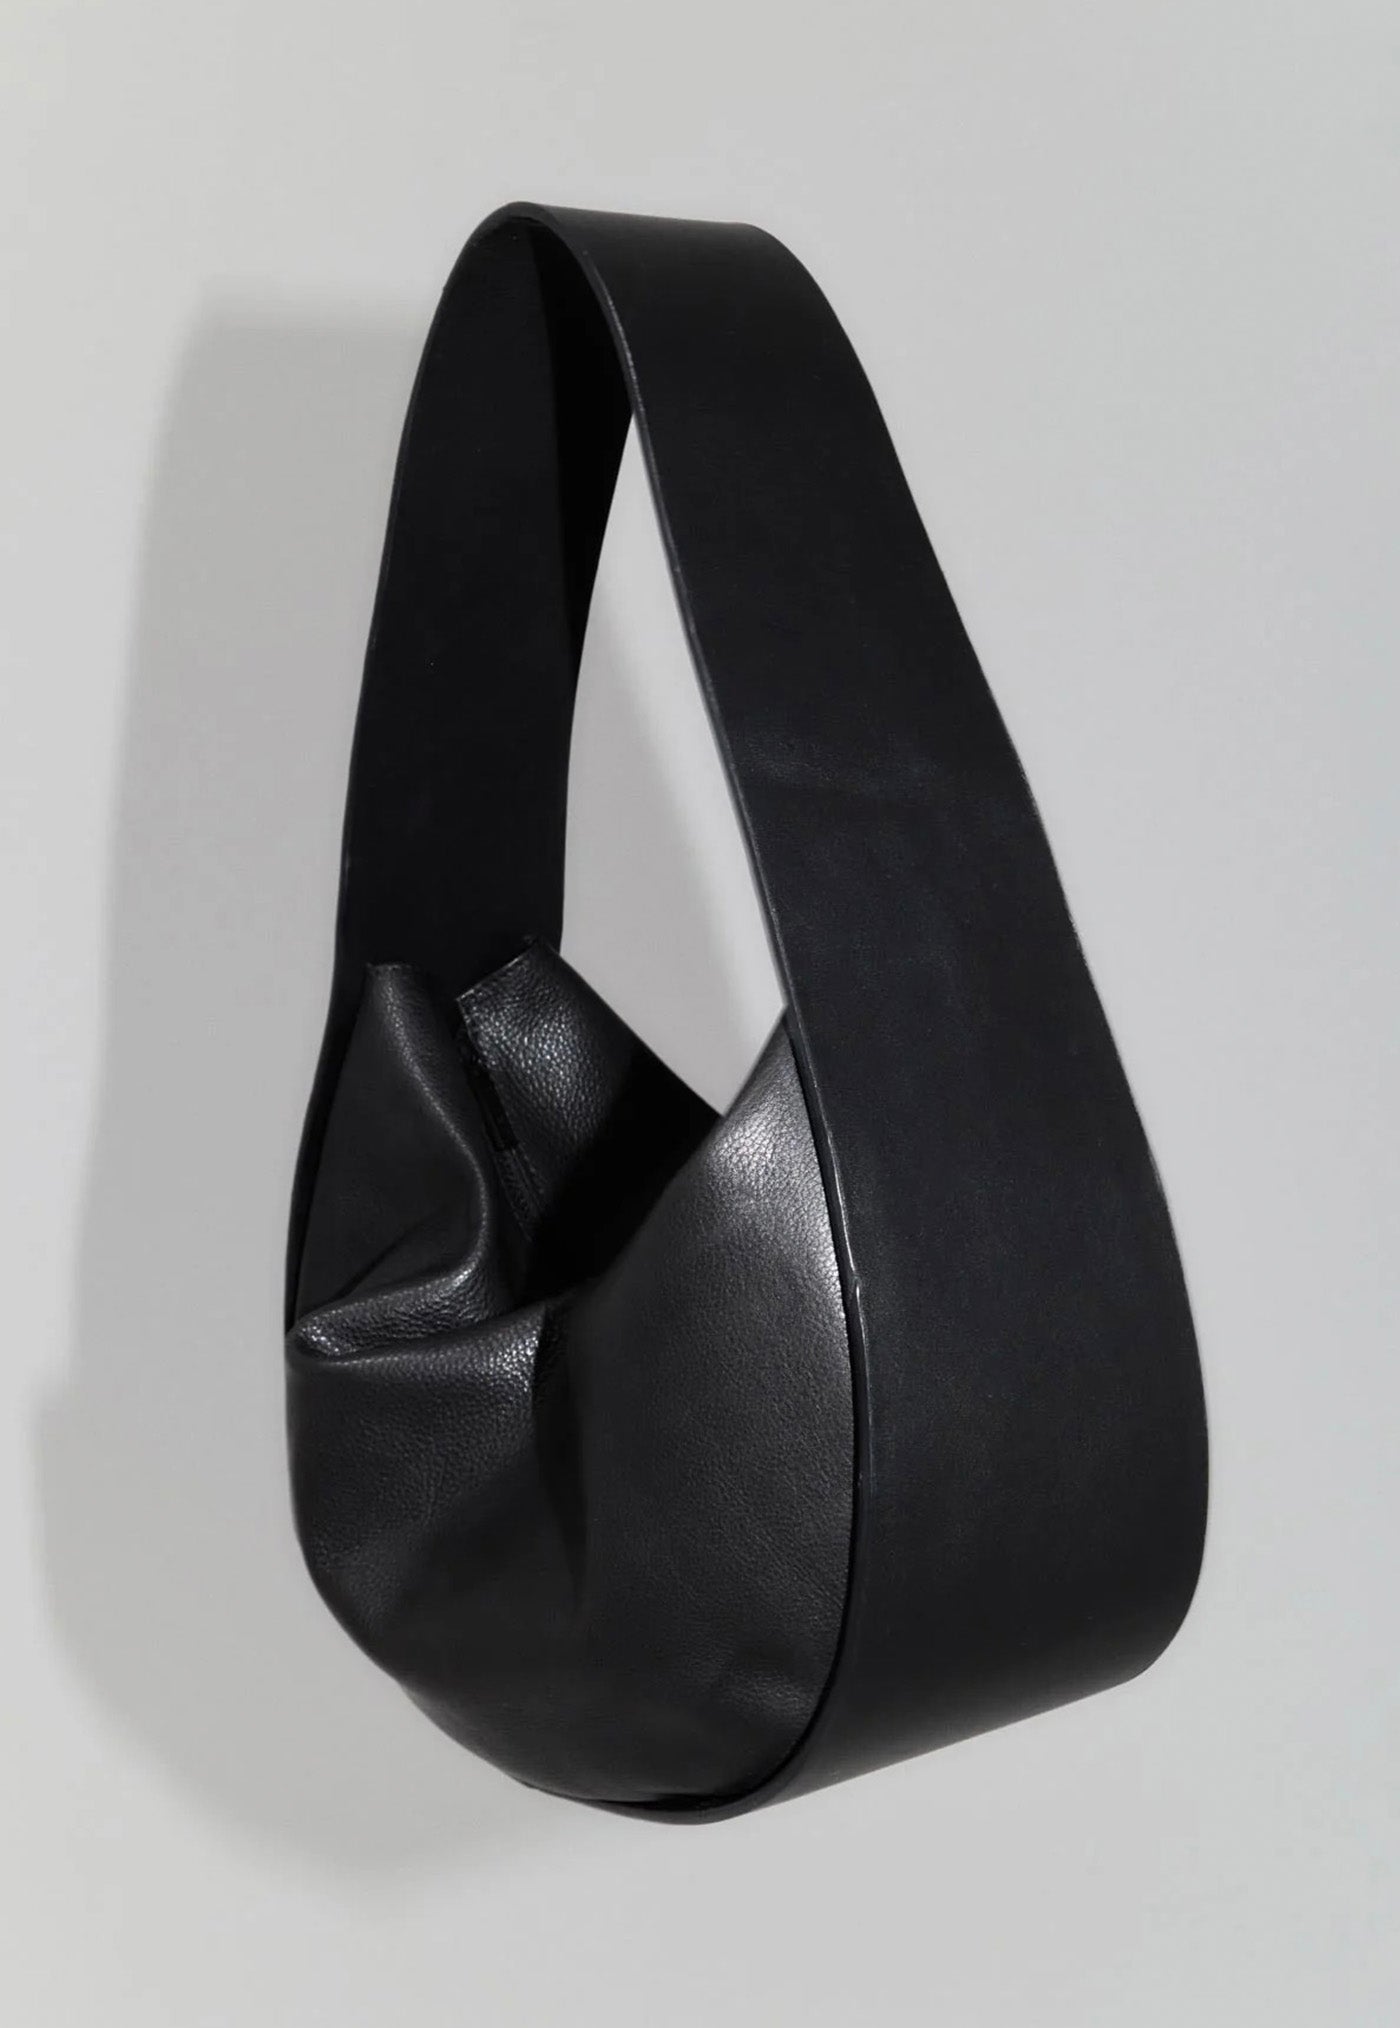 Soft Arc Bag - Black sold by Angel Divine